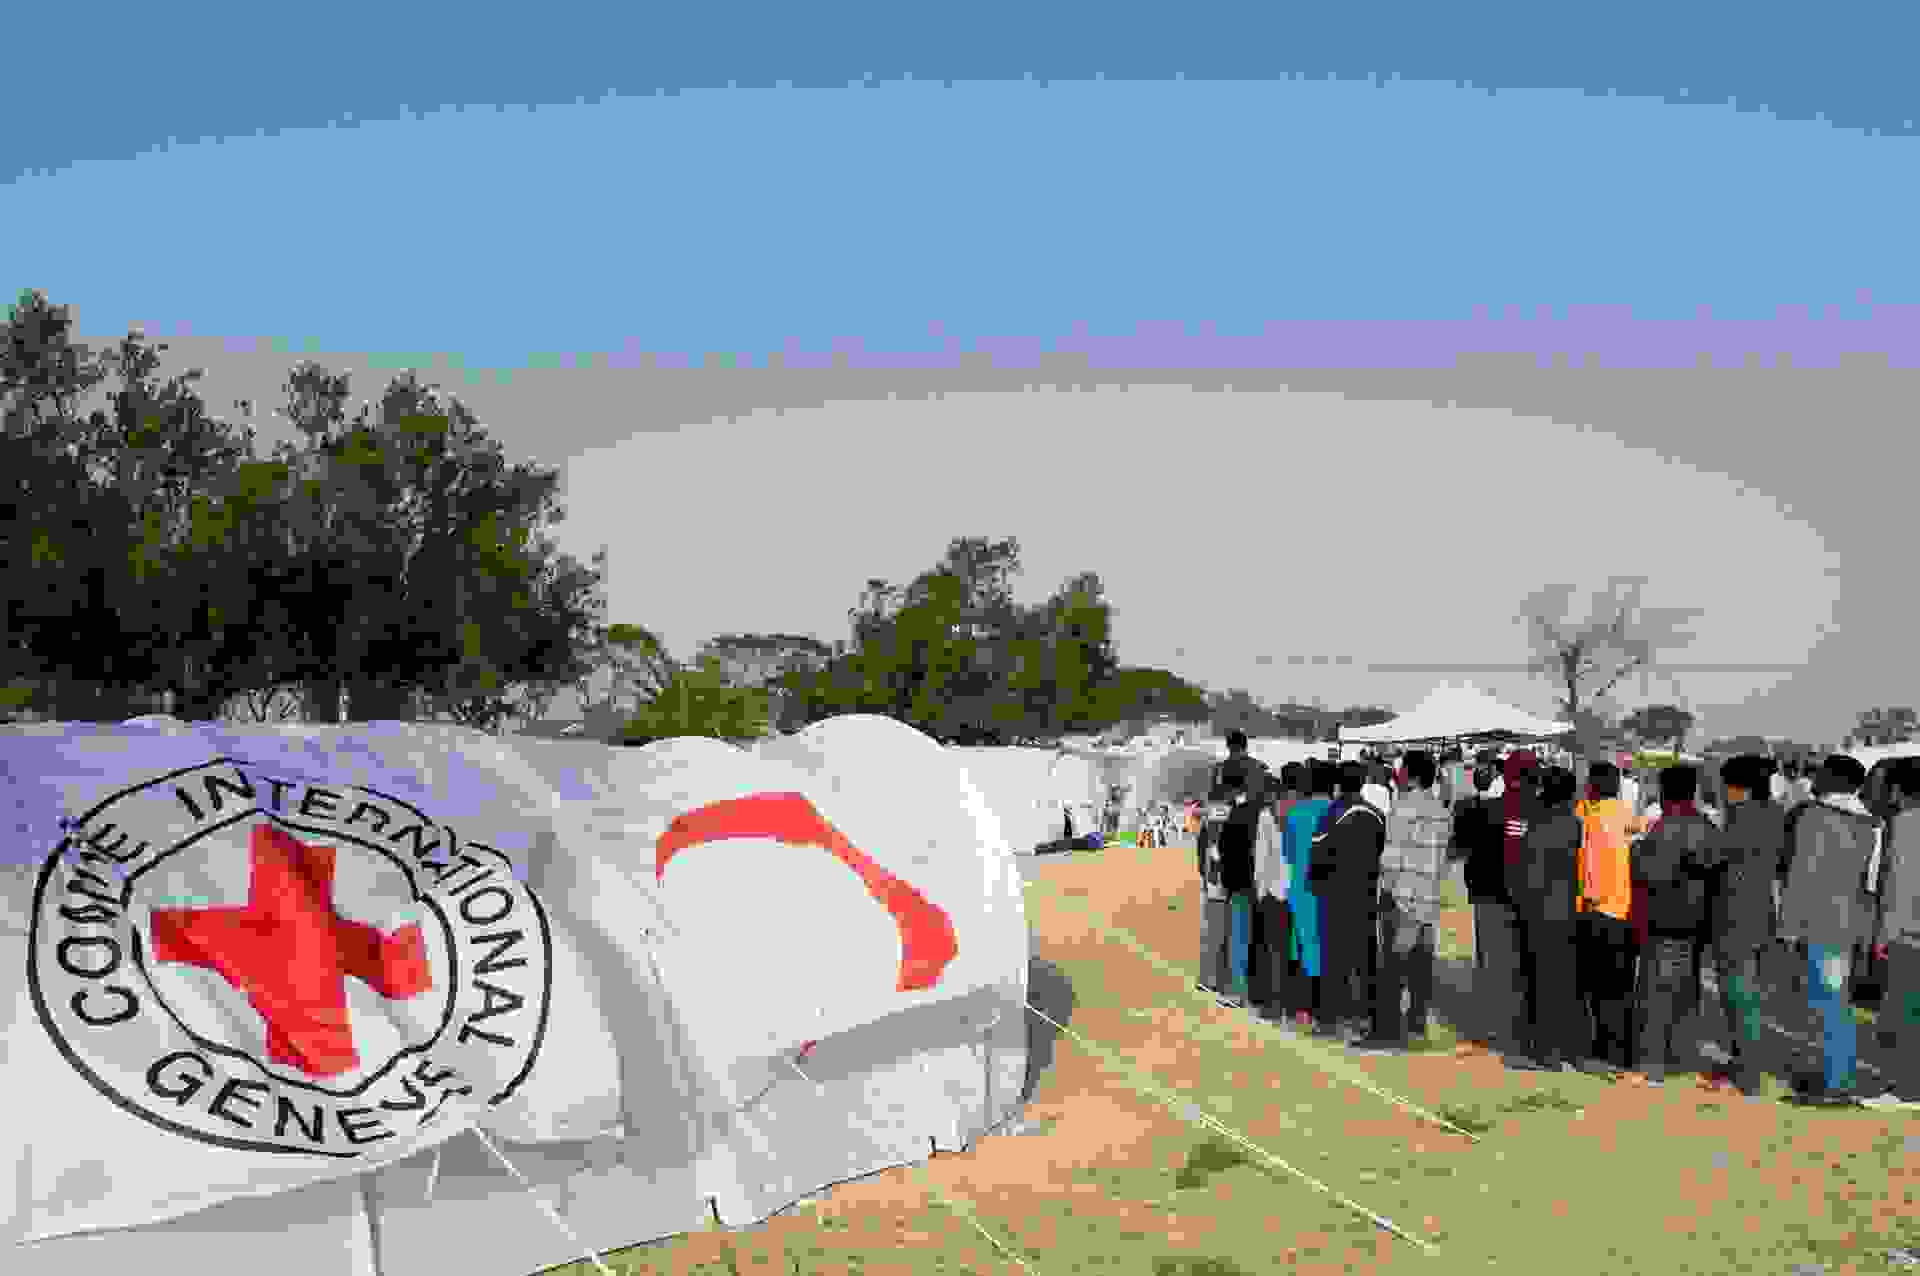 Ihmisiä jonossa pakolaisleirilla Punaisen Ristin tunnuksin varustettujen telttojen keskellä.